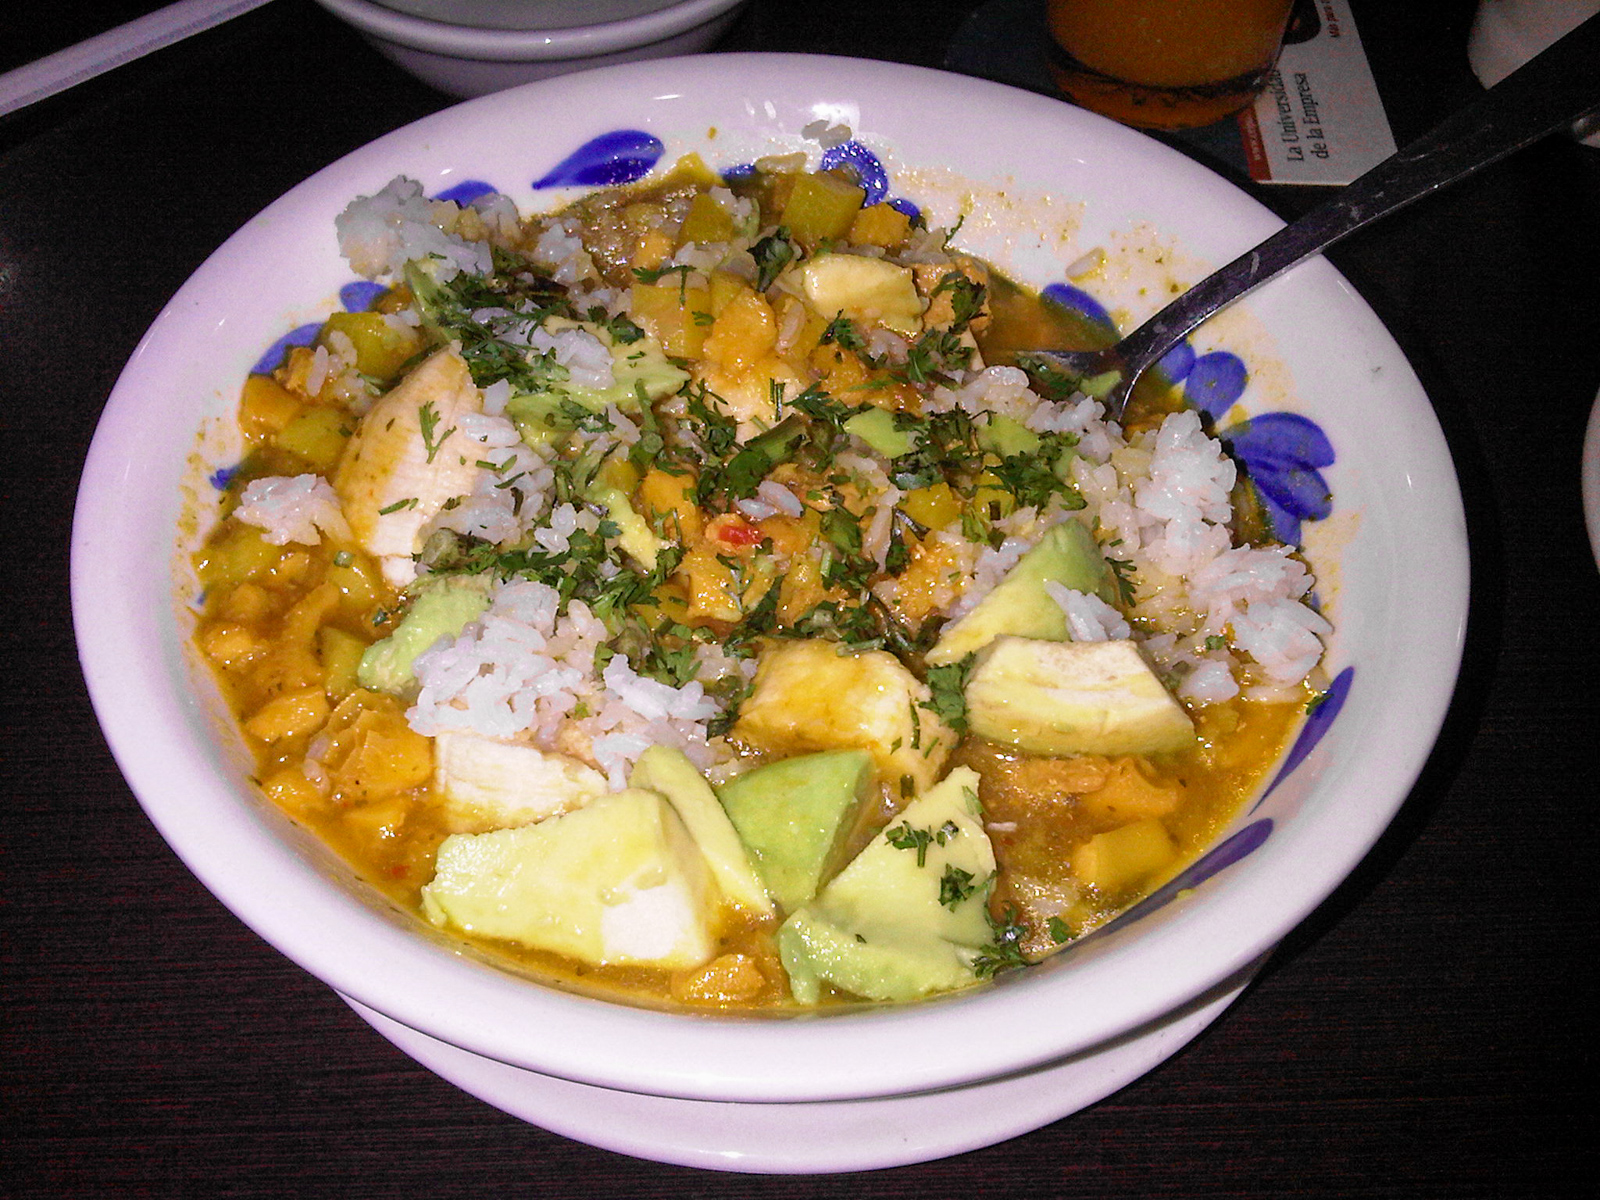 Mondongo (tripe) soup is a popular Colombian food in Medellin